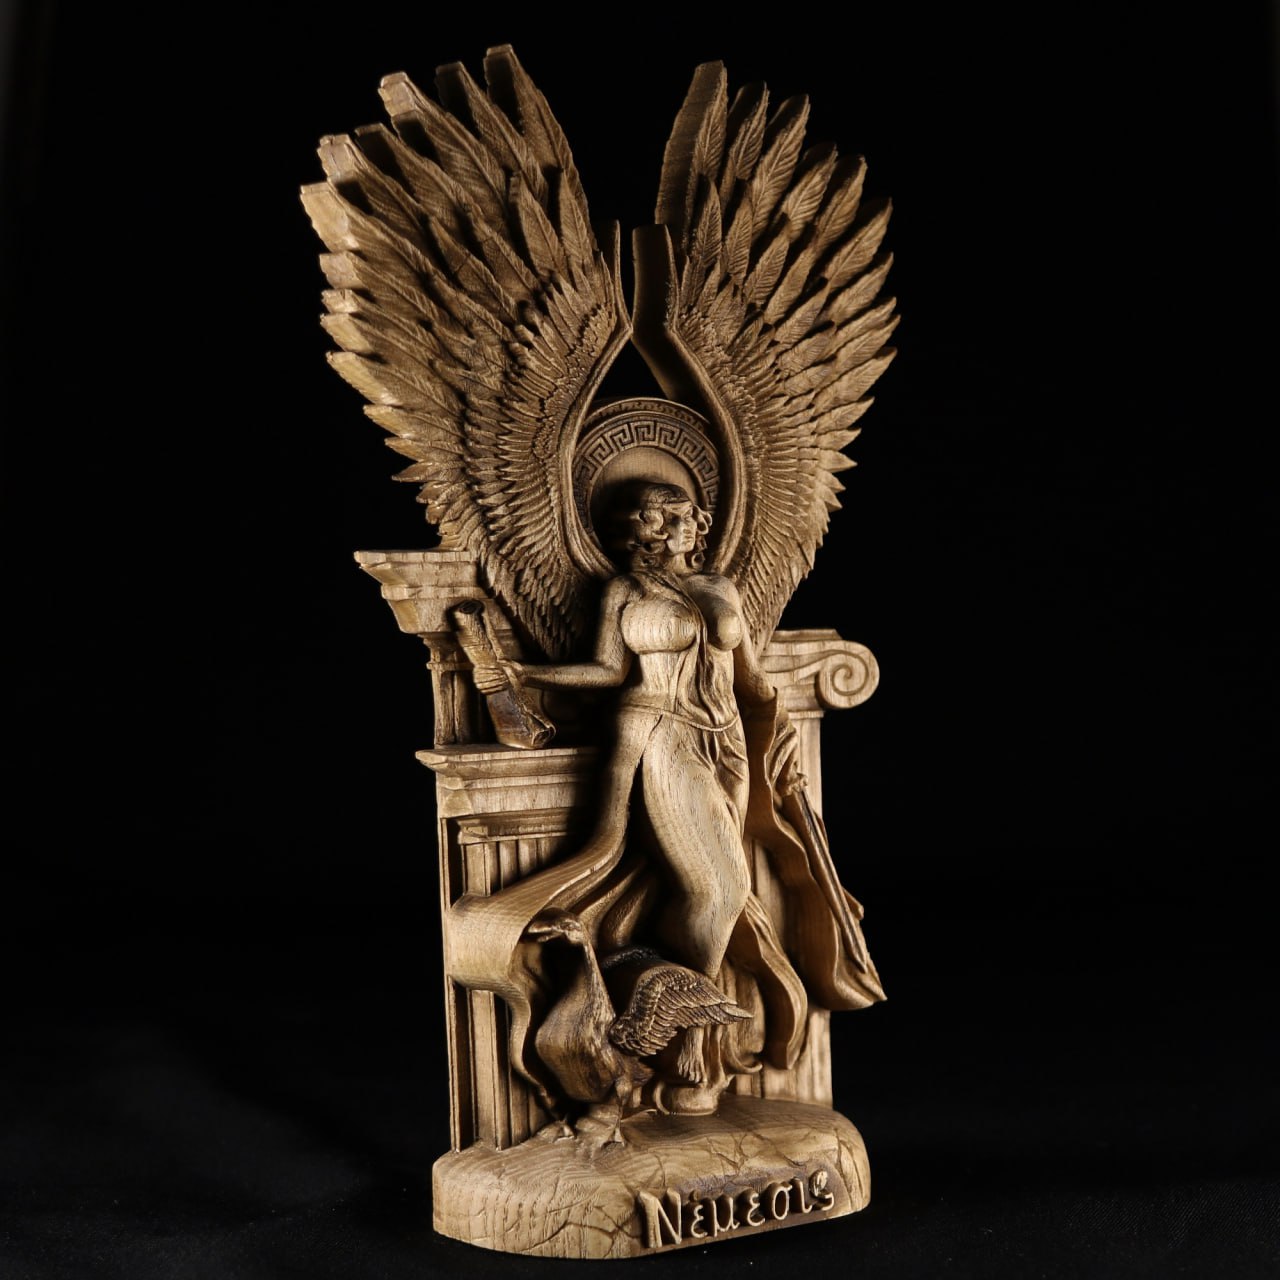 Nemesis: Handmade Wooden Statue Carving of the Greek Goddess of Vengeance